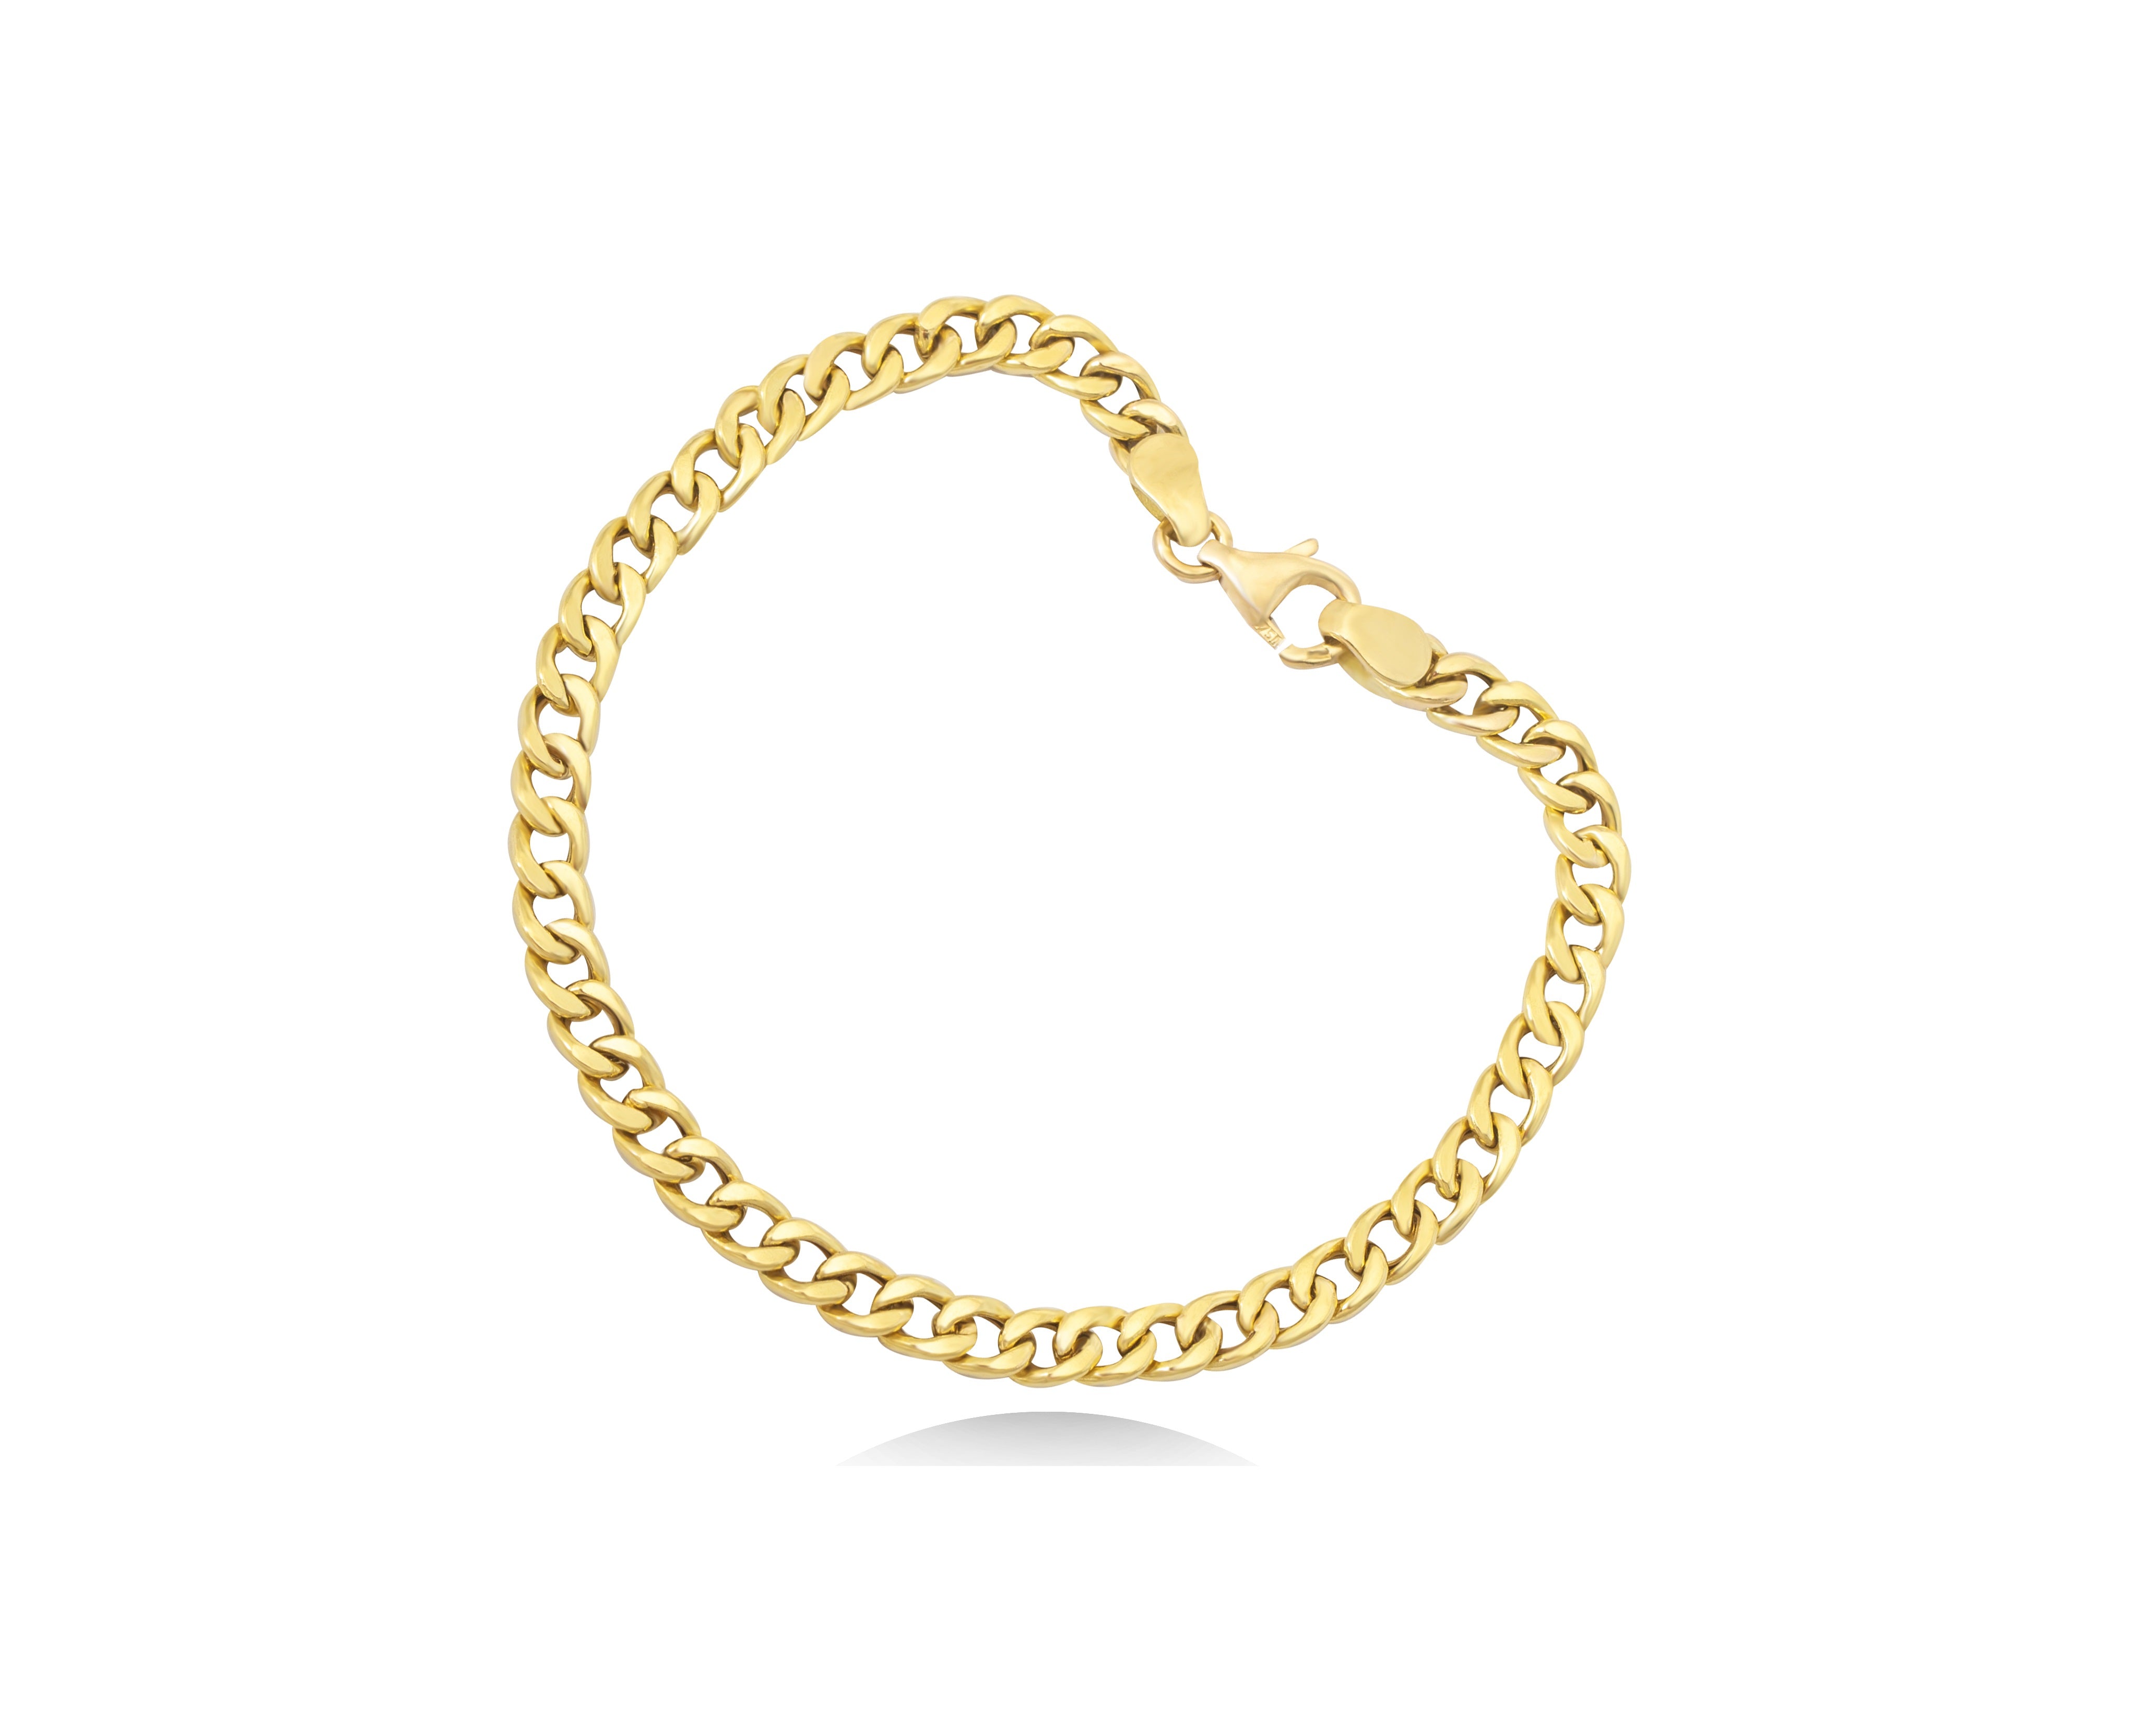 Cuban Chain Bracelet in 18K Yellow Gold